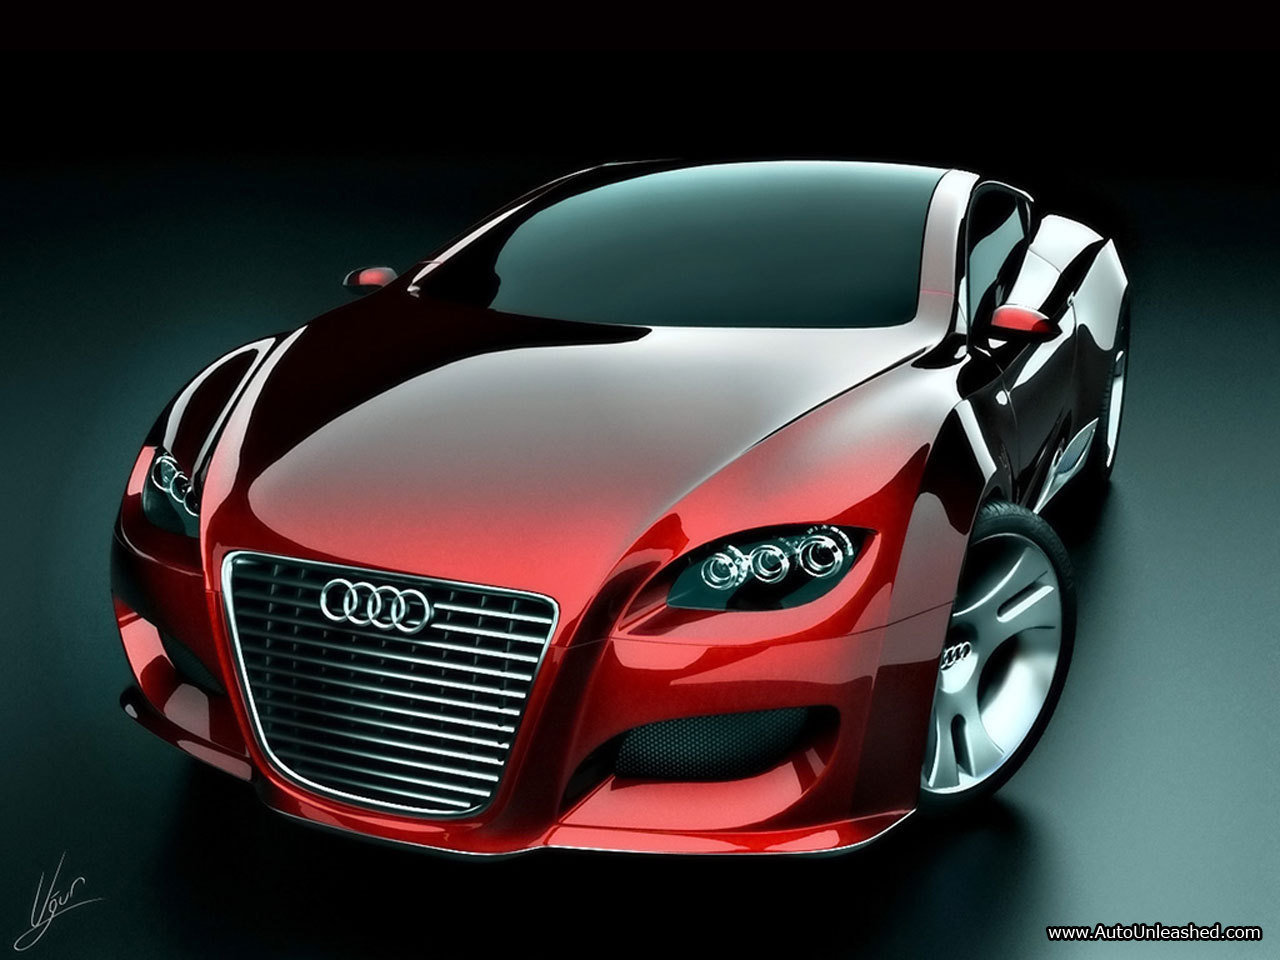 Audi cars: Audi cars